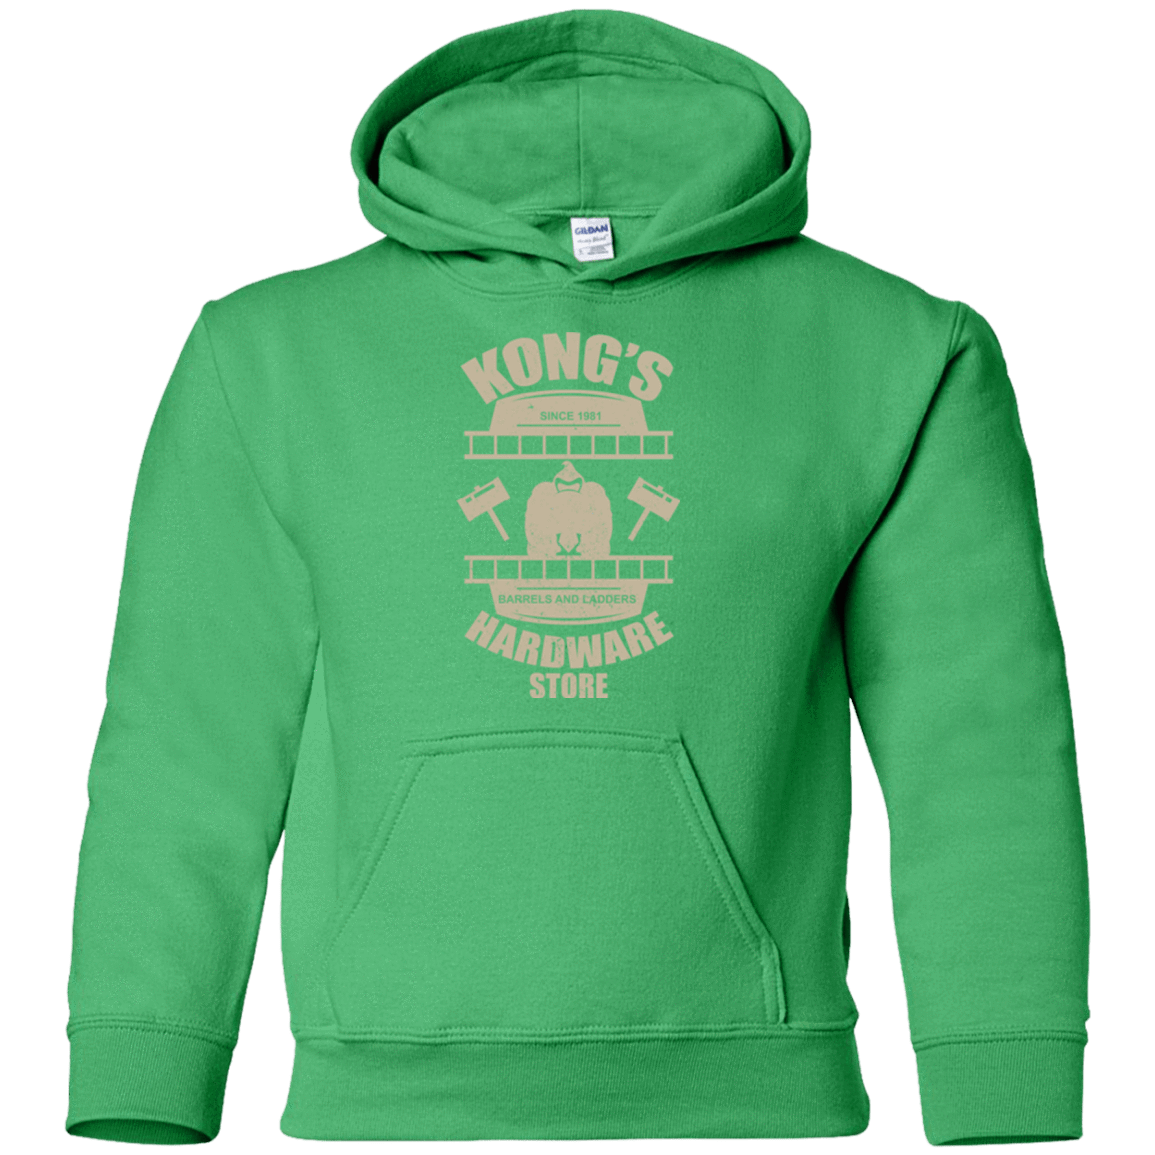 Sweatshirts Irish Green / YS Kongs Hardware Store Youth Hoodie